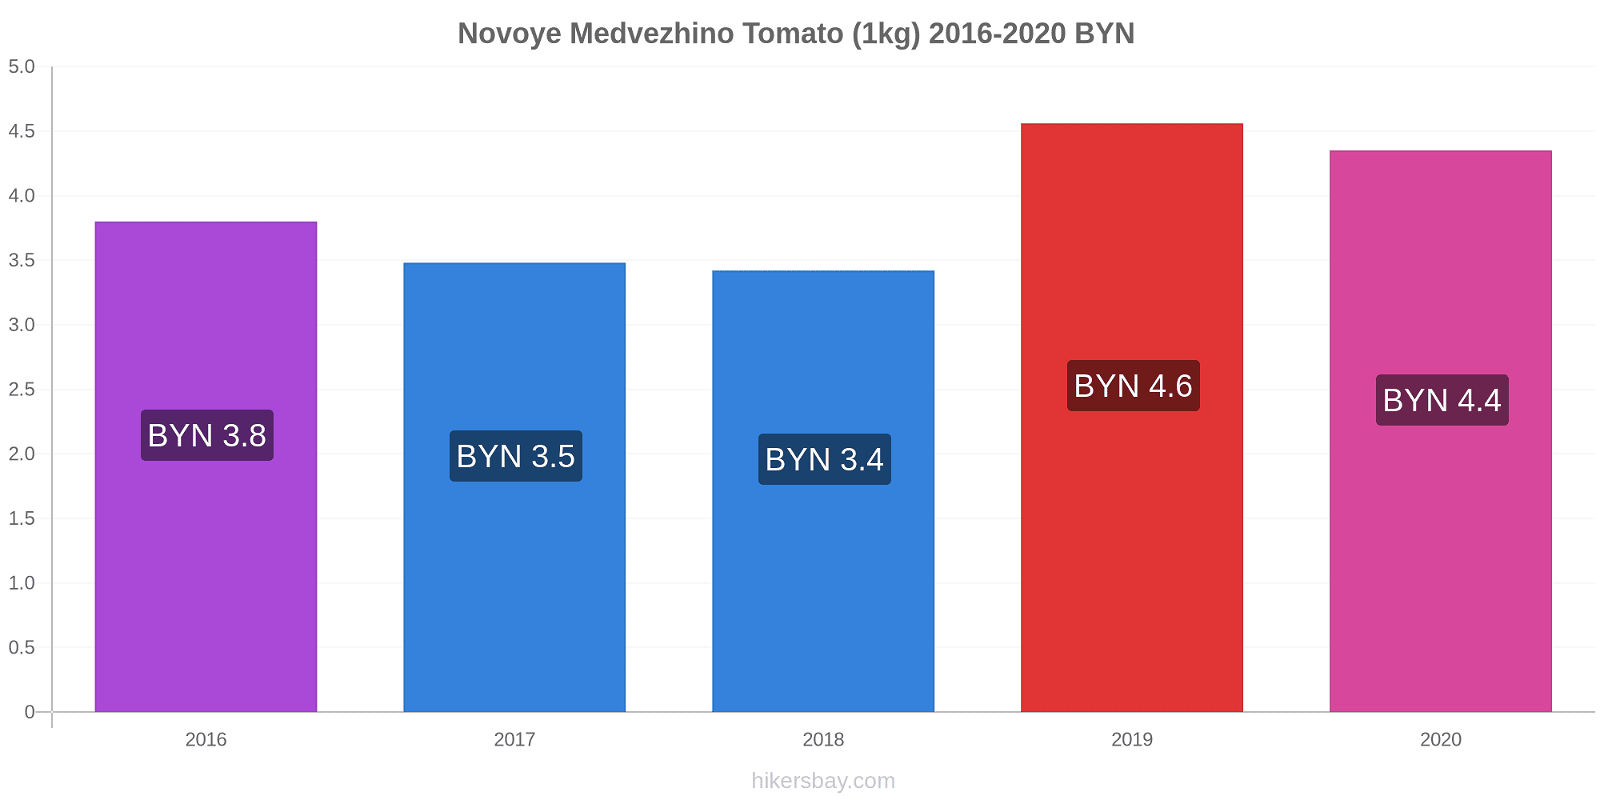 Novoye Medvezhino price changes Tomato (1kg) hikersbay.com